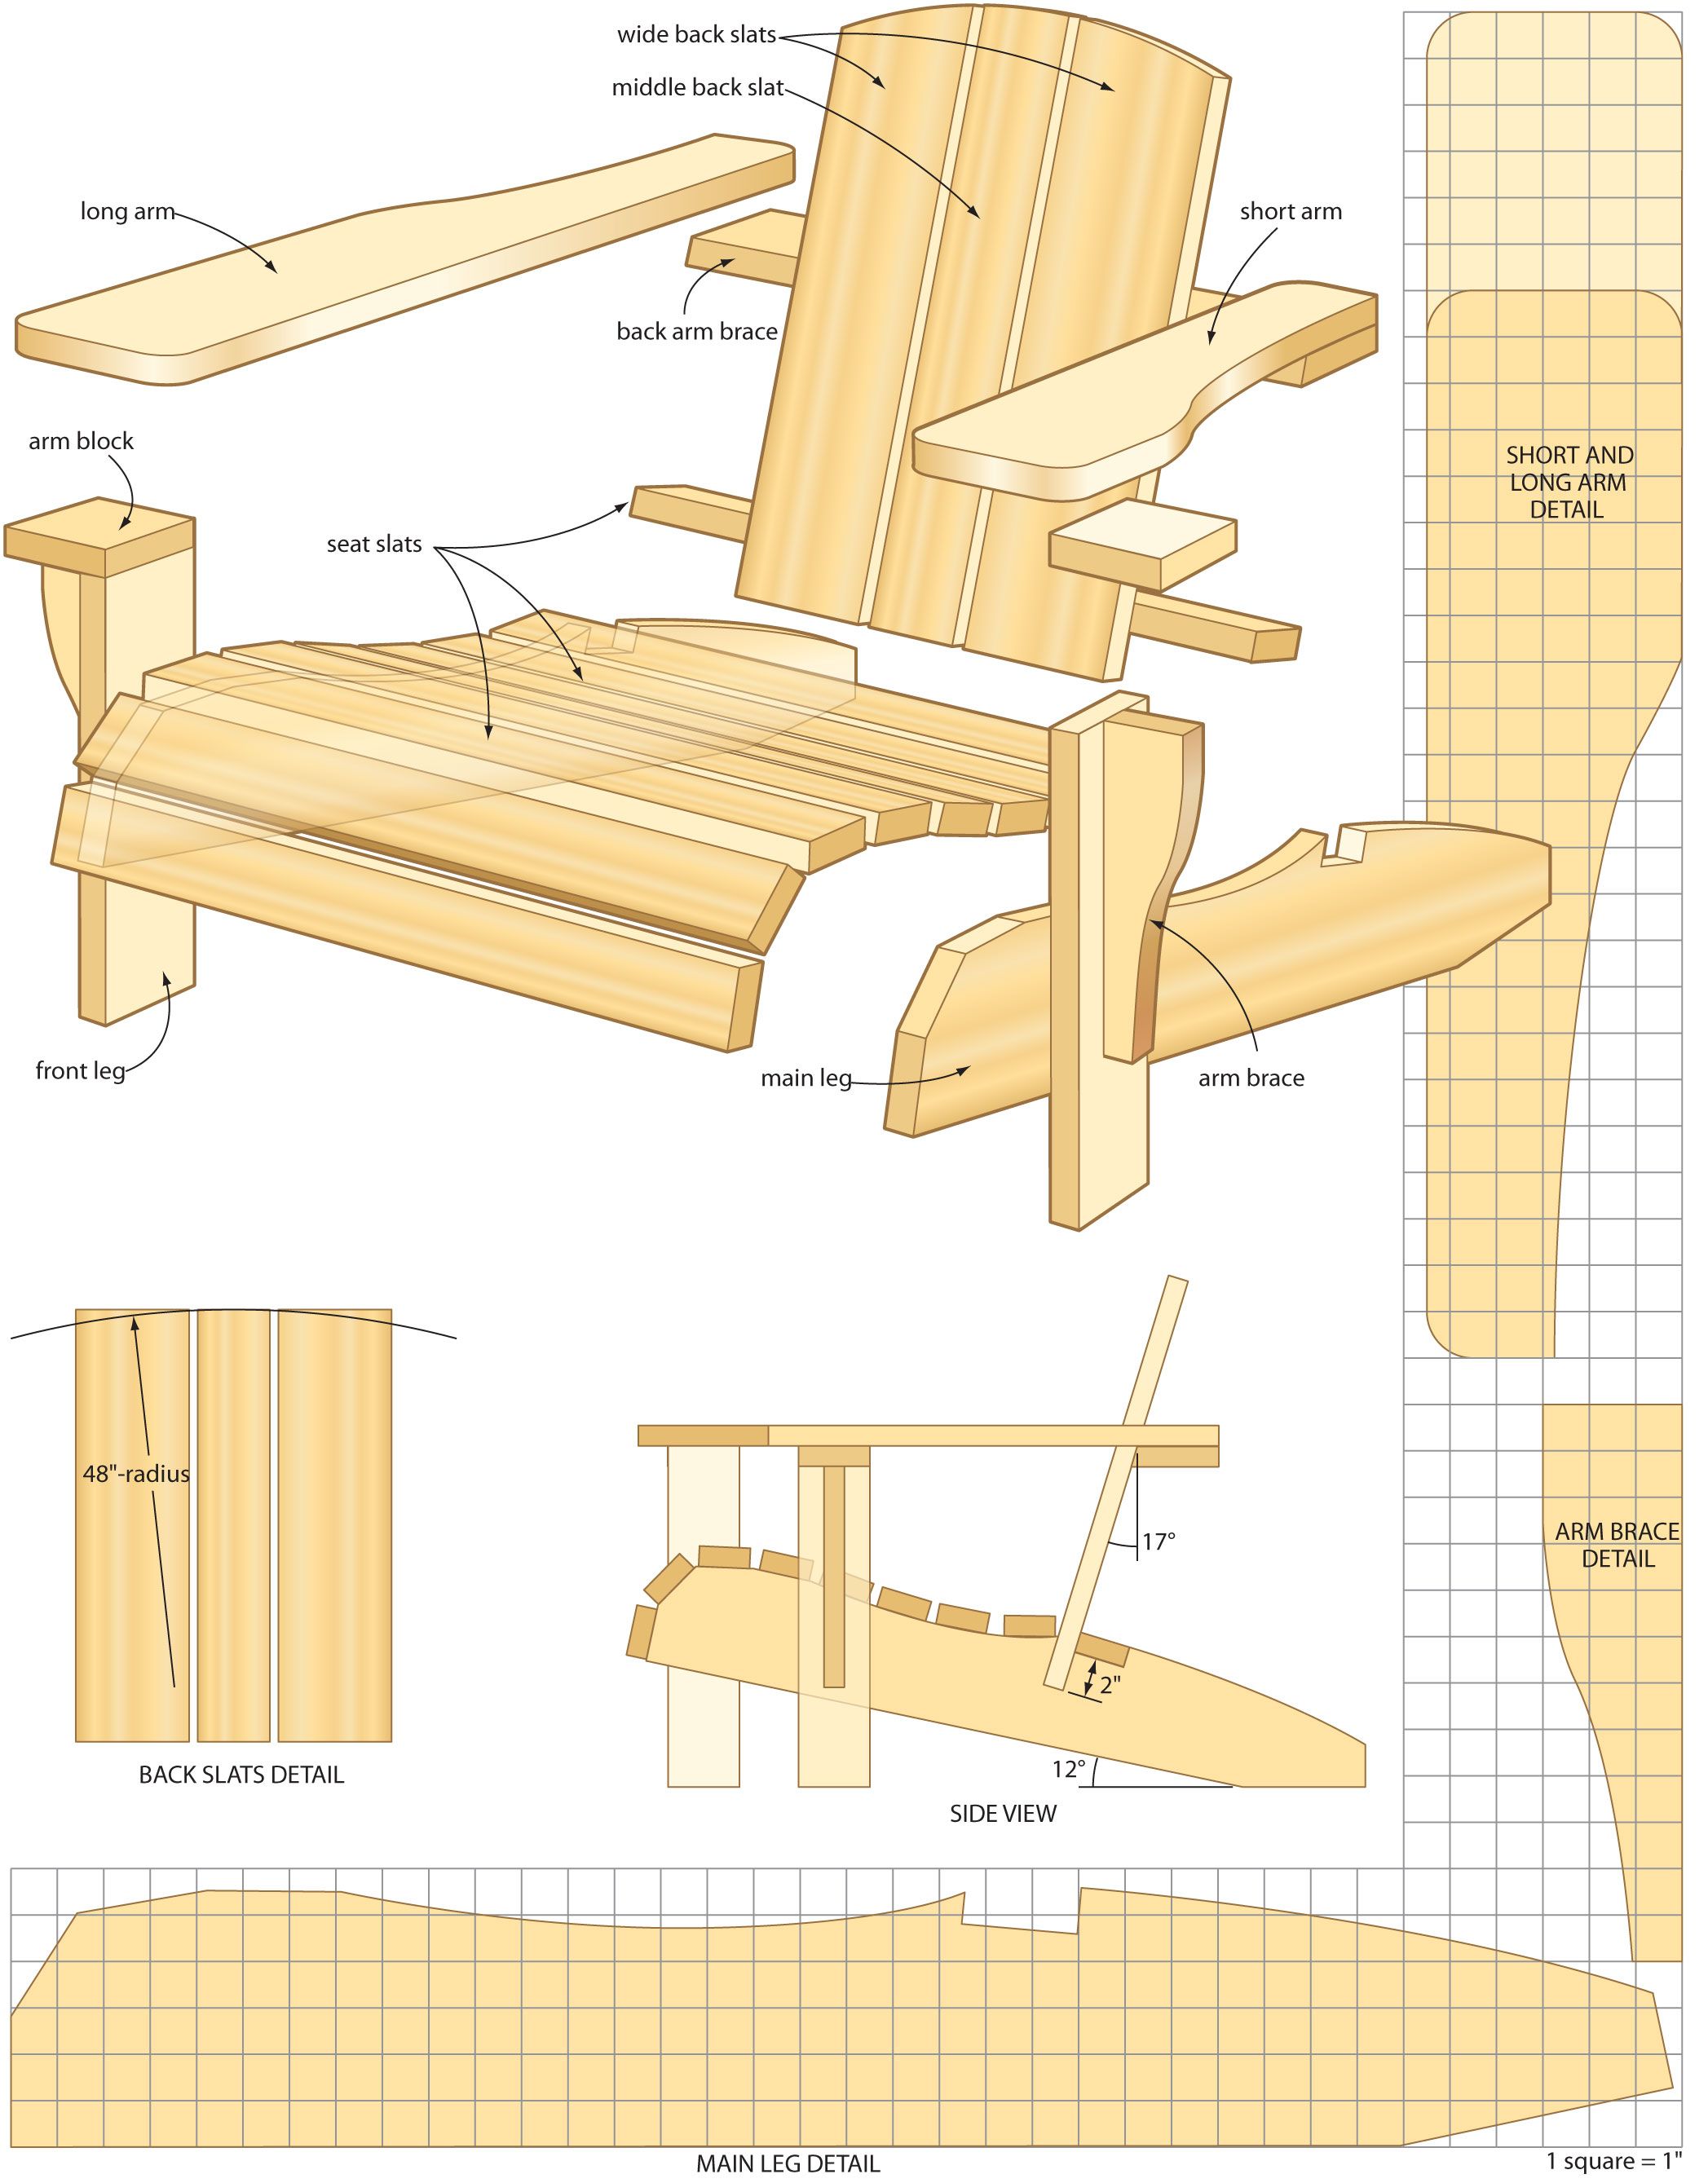 чертежи мебели для самостоятельного изготовления из дерева